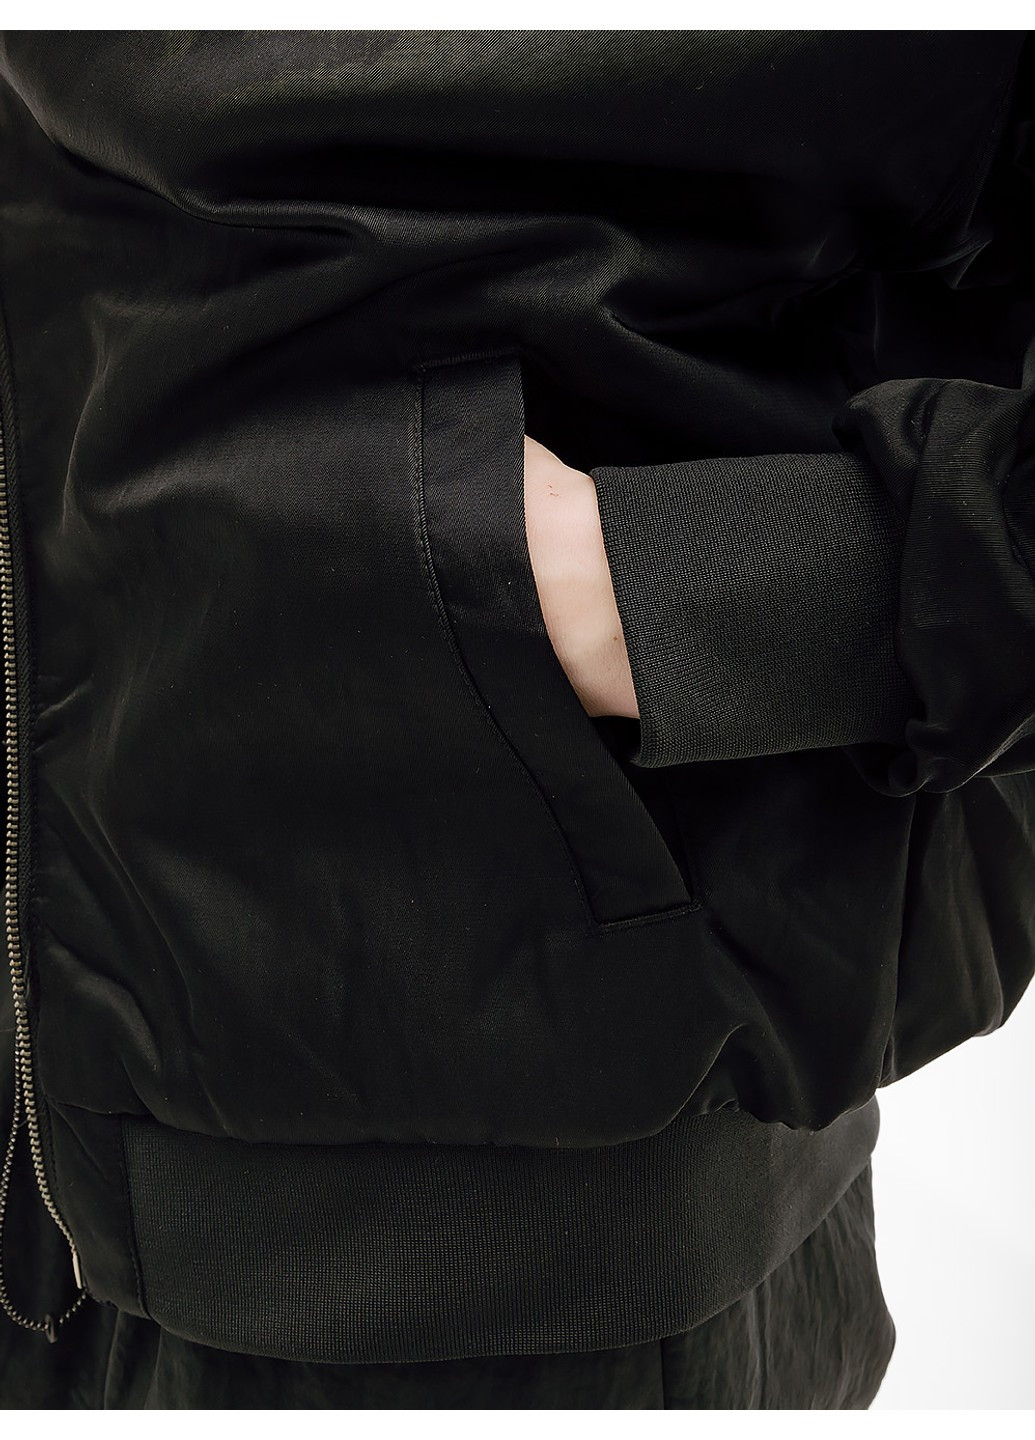 Чорна демісезонна куртка w nsw vrsty bmbr jkt Nike